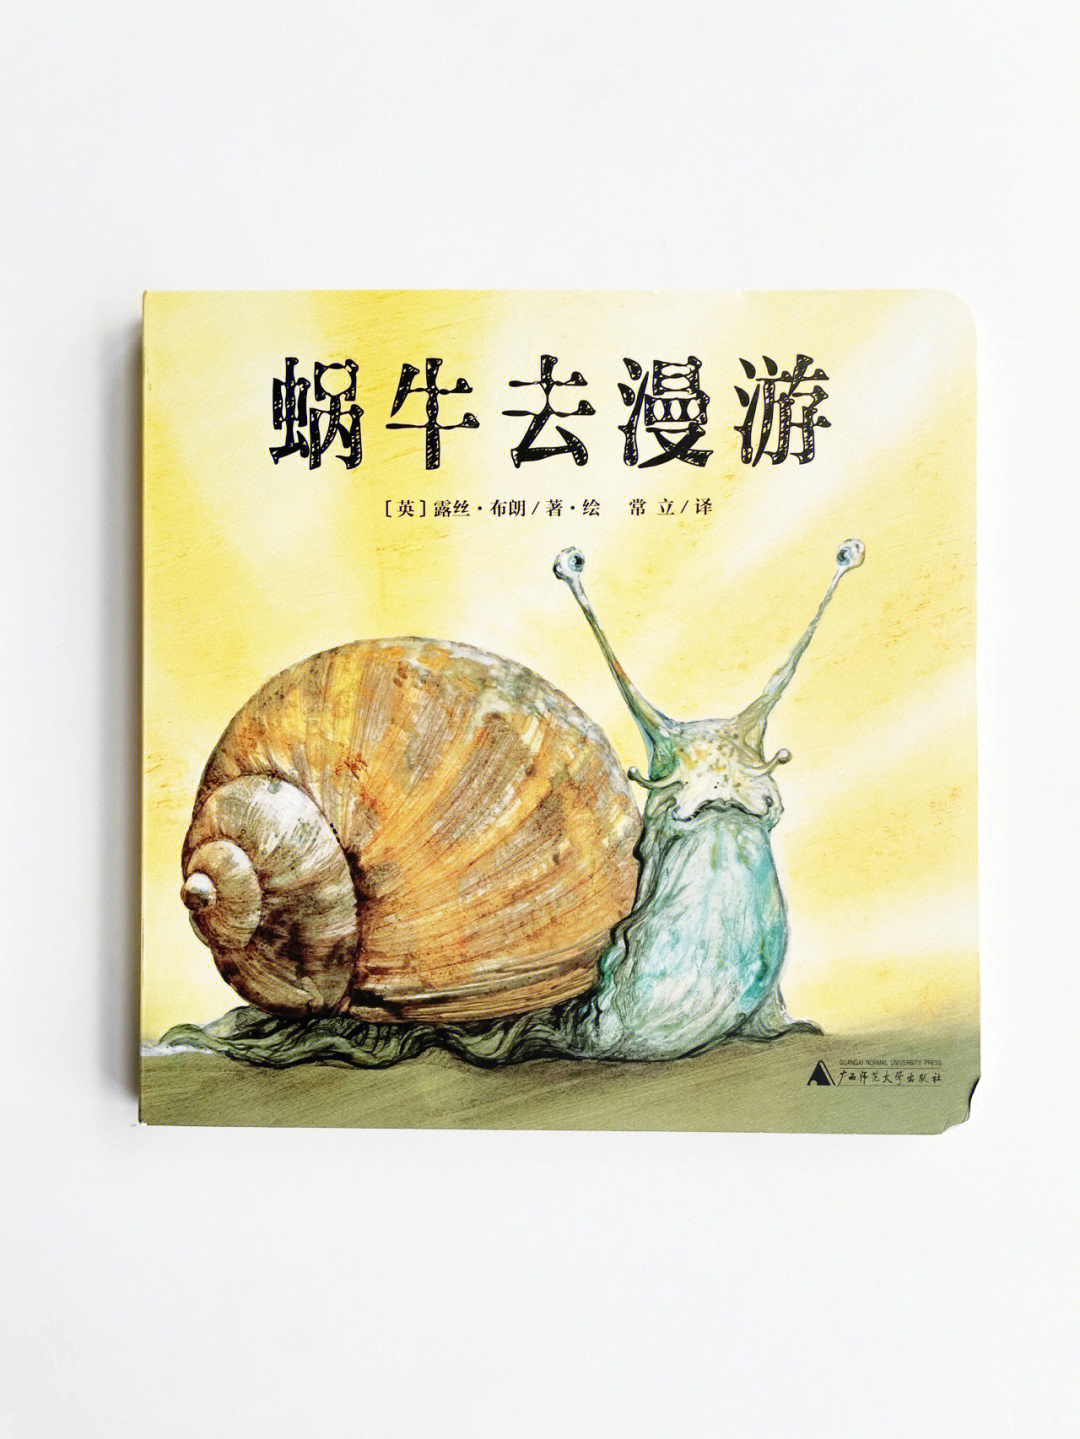 1001绘本蜗牛的人生也是我们的人生呀